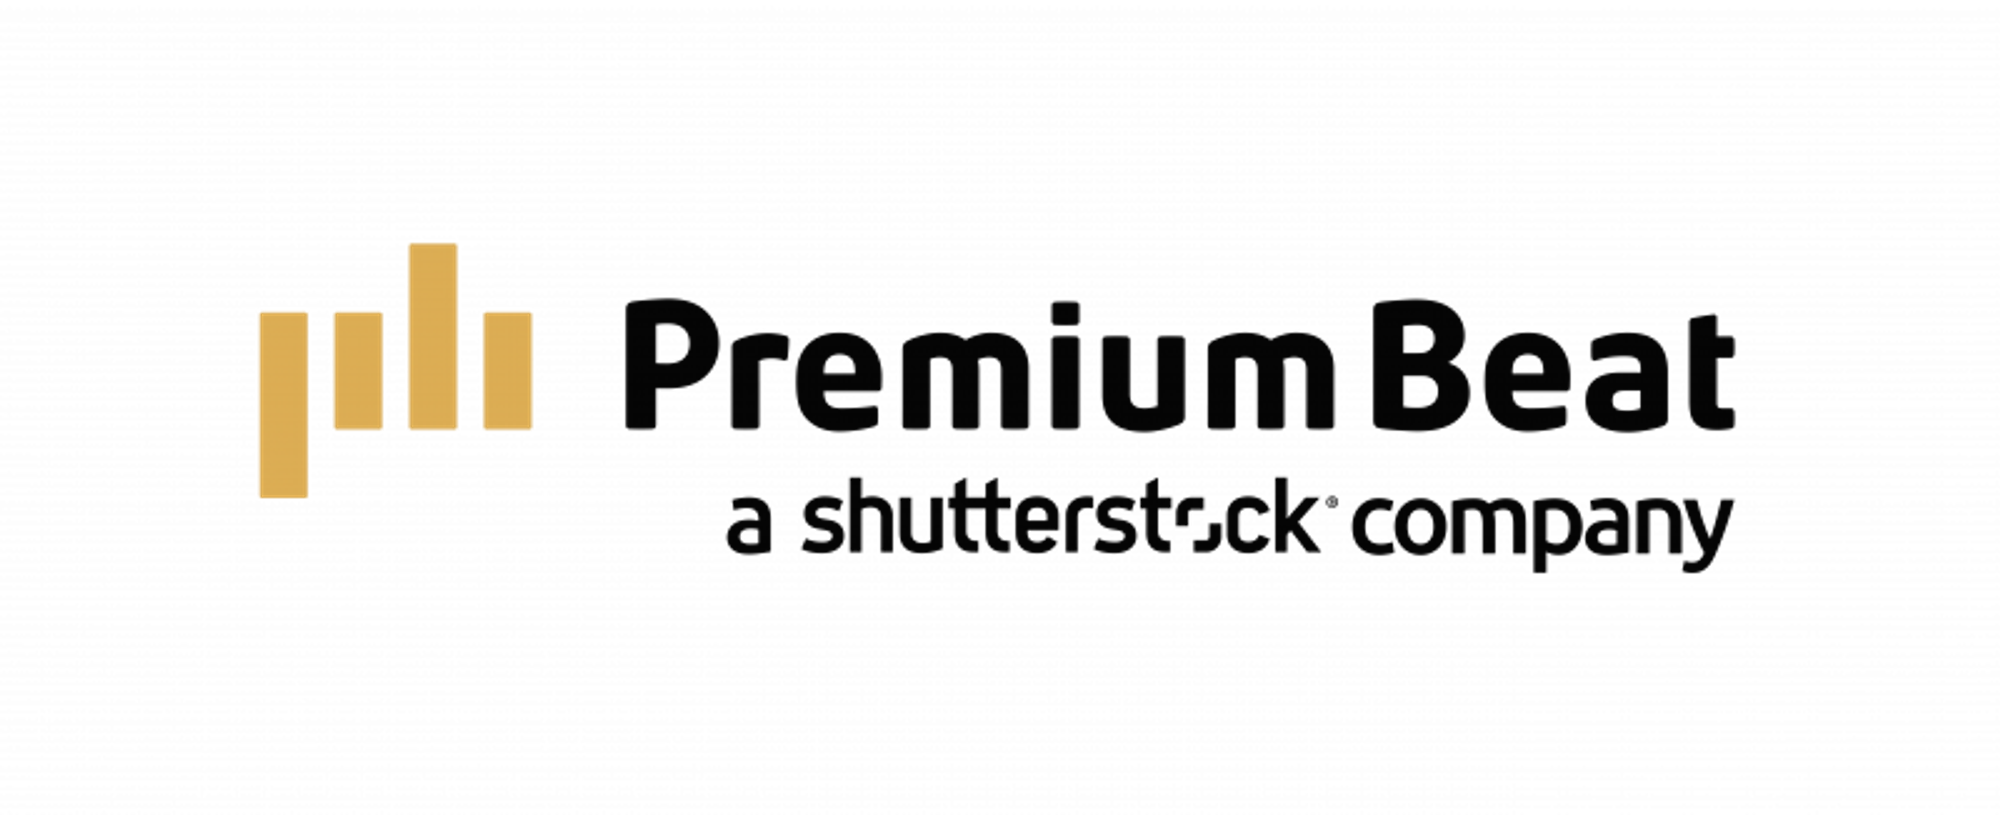 PremiumBeat by Shutterstock